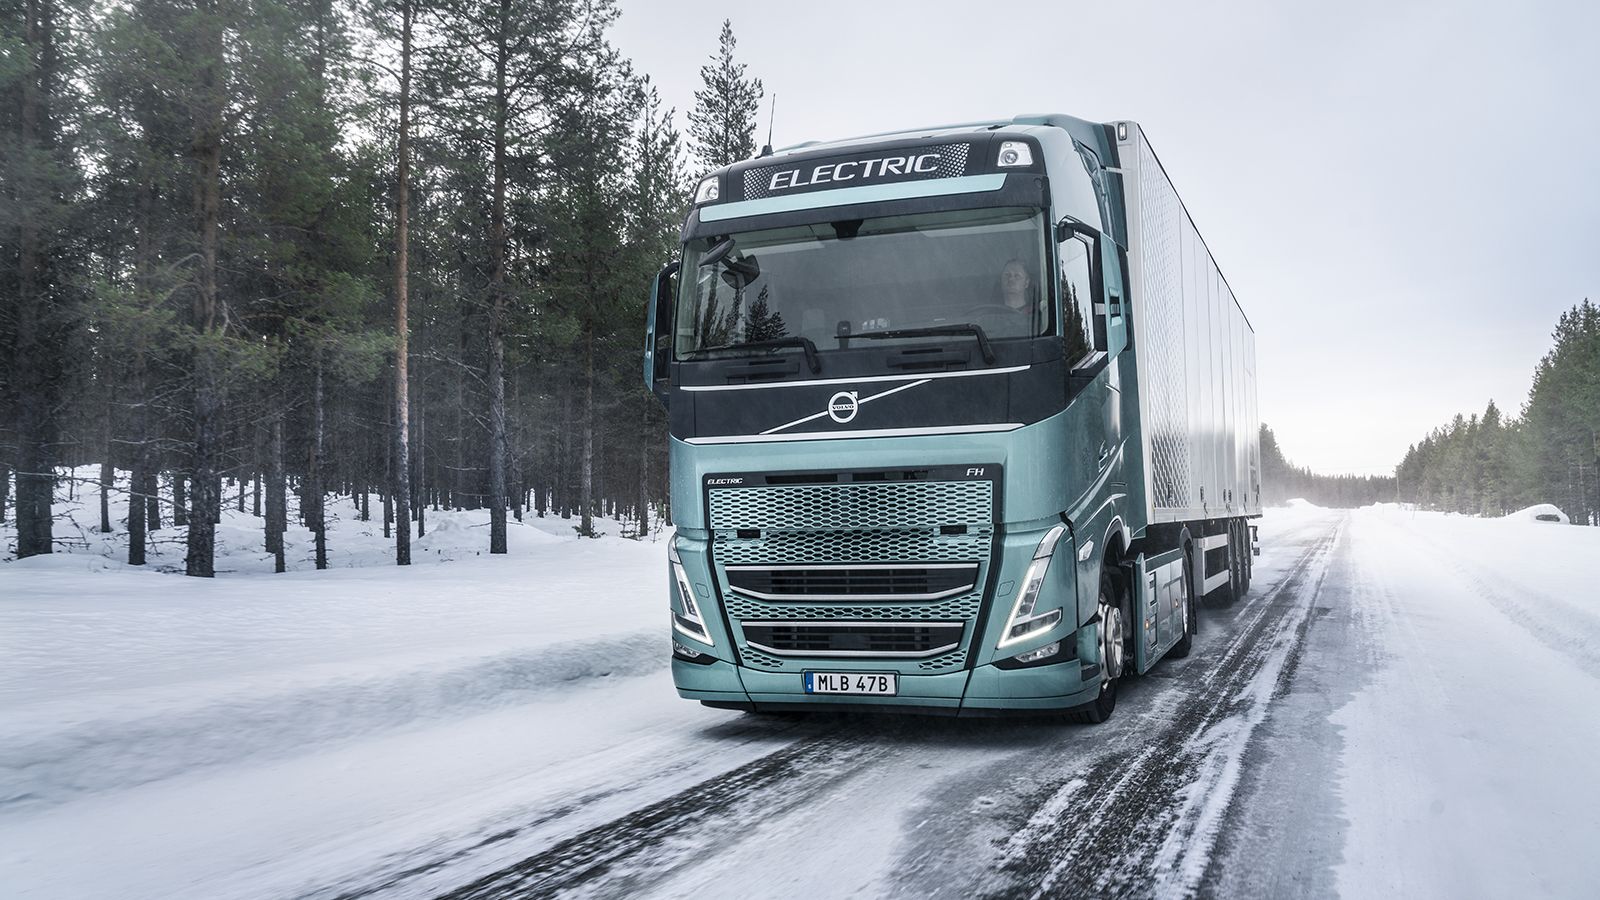 Αυξημένη σταθερότητα σε συνθήκες χαμηλής πρόσφυσης για τα ηλεκτρικά φορτηγά της Volvo, χάρη στο νέο σύστημα Active Grip Control.